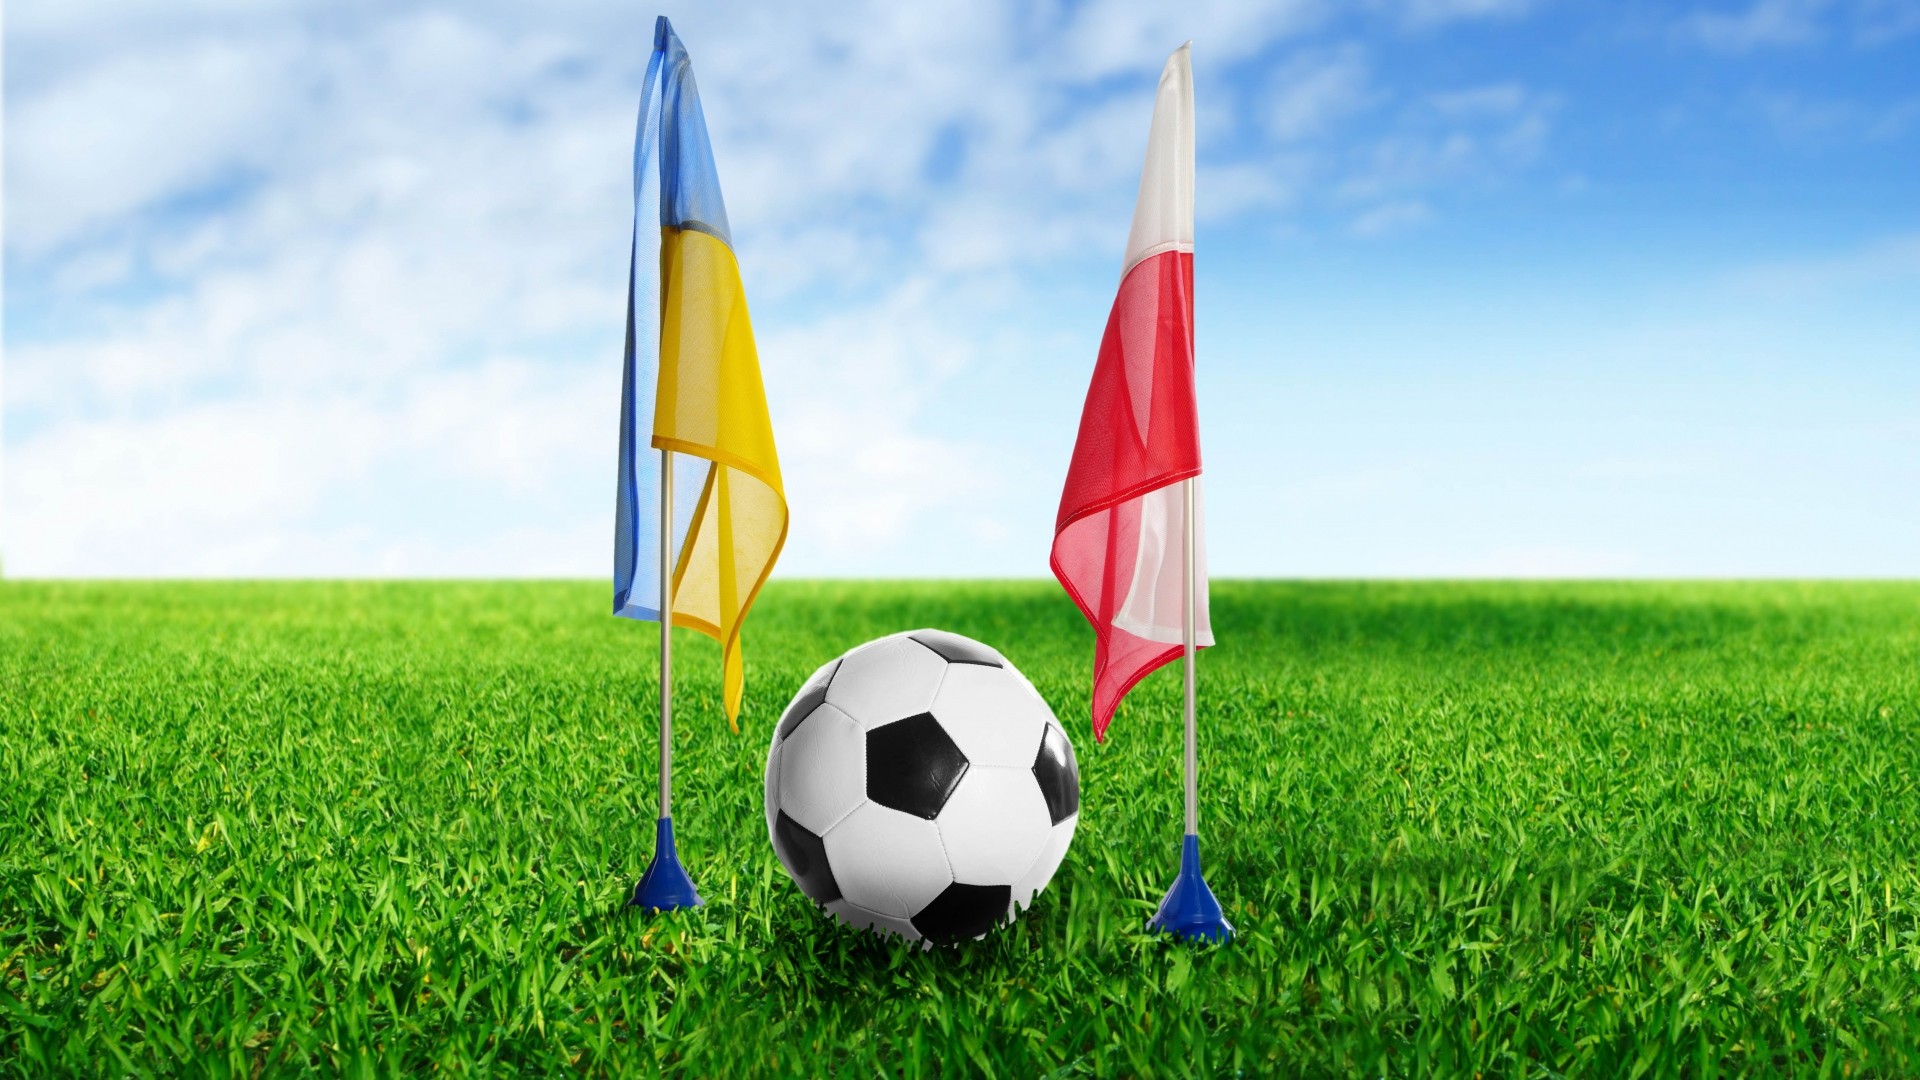 1920x1080 ... Background Full HD 1080p.  Wallpaper football, ukraine,  poland, ball, grass, flags